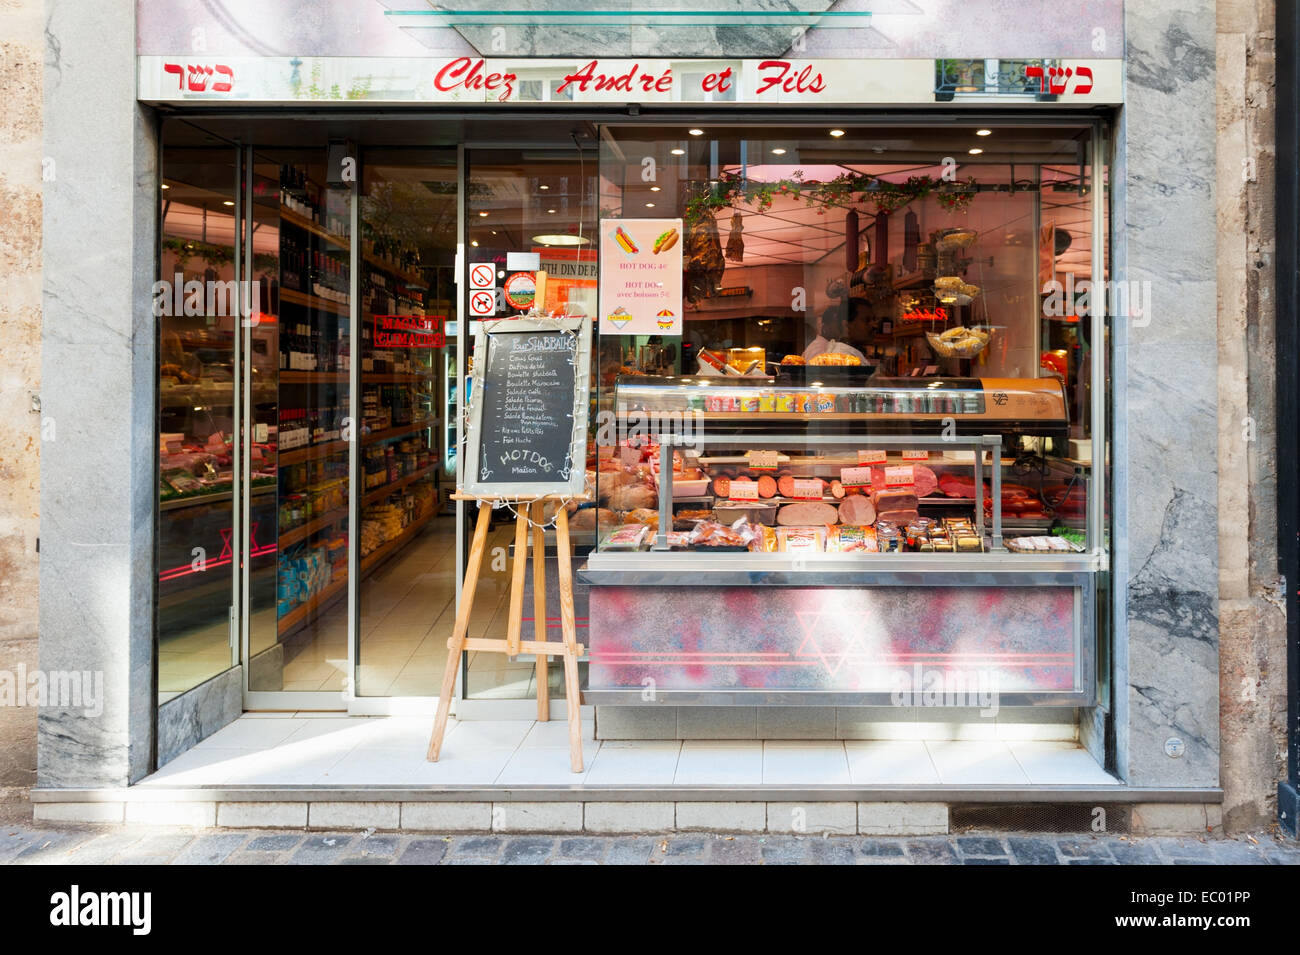 André et fils - Jewish boucherie in the Marais, Paris. Excellent beef hot dogs. Stock Photo